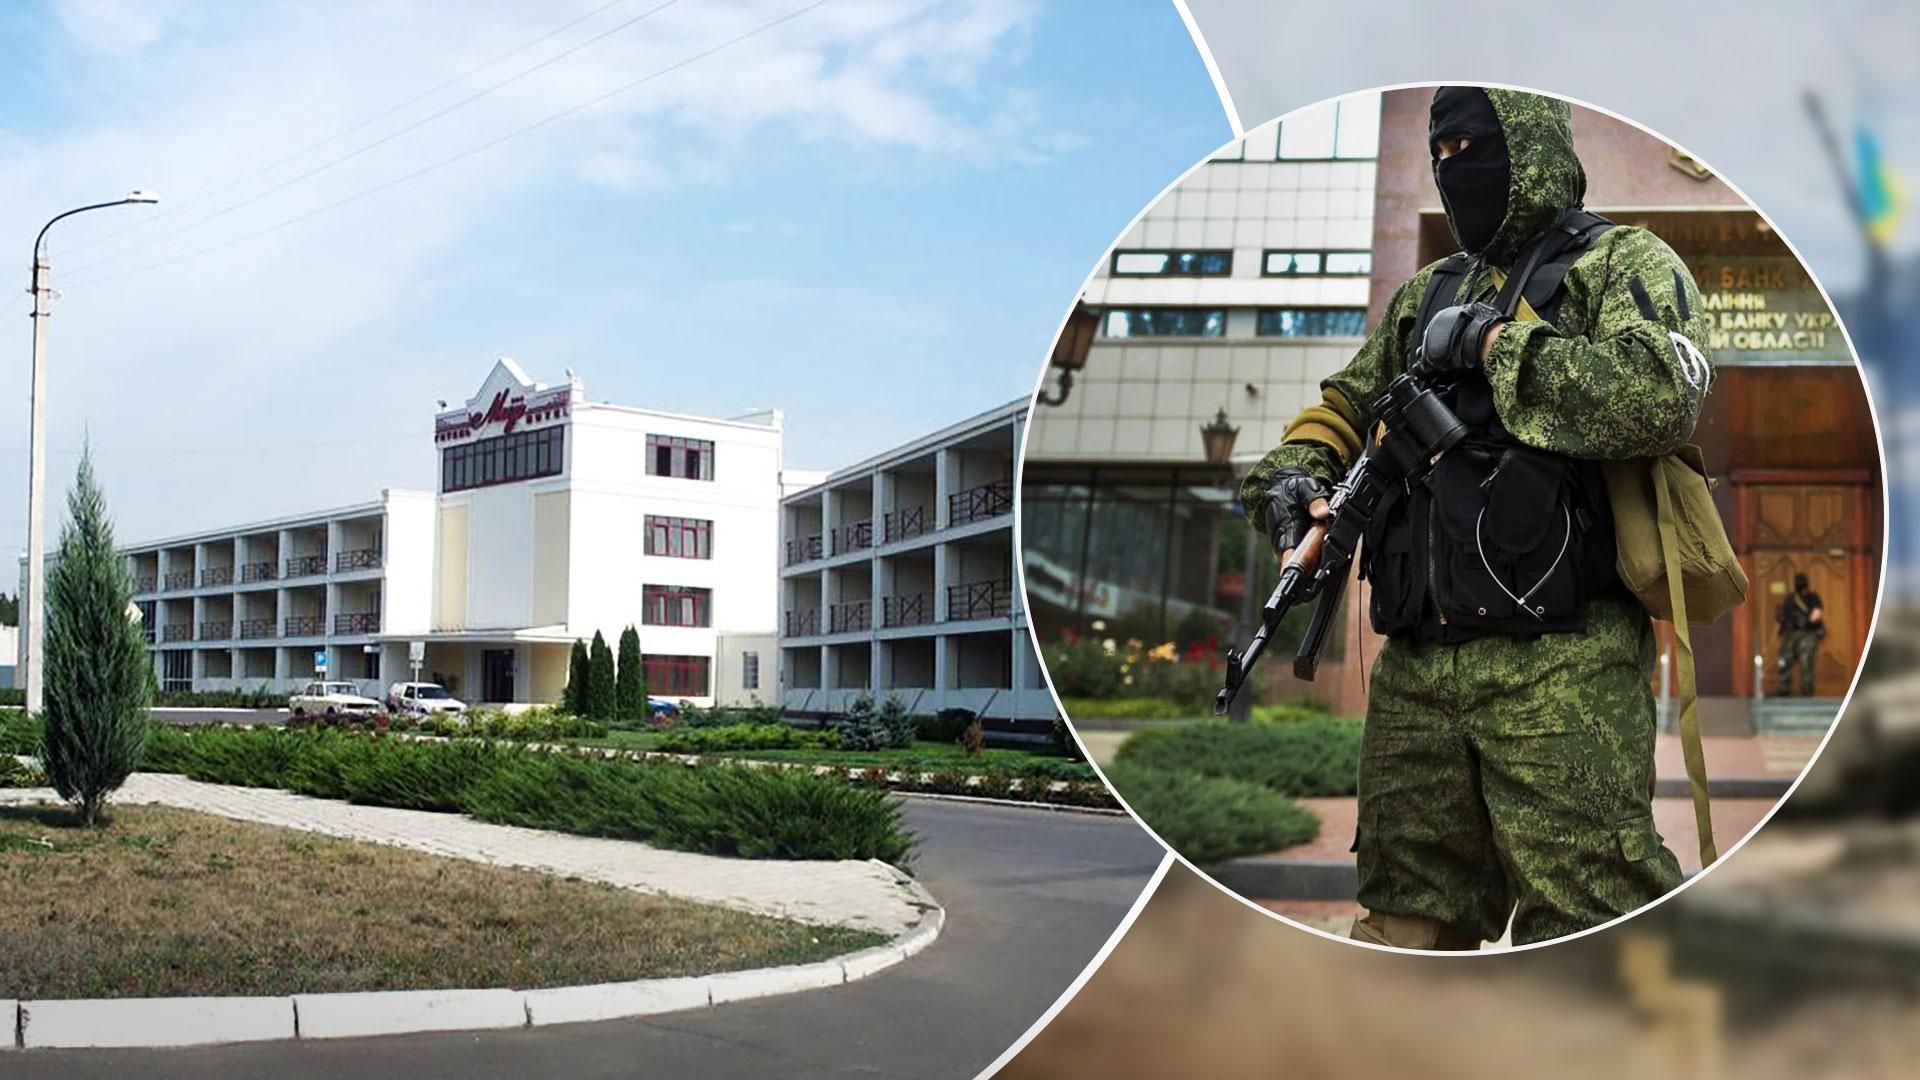 Російські війська не просуваються, а досі сидять у готелі "Мир" на околиці Сєвєродонецька